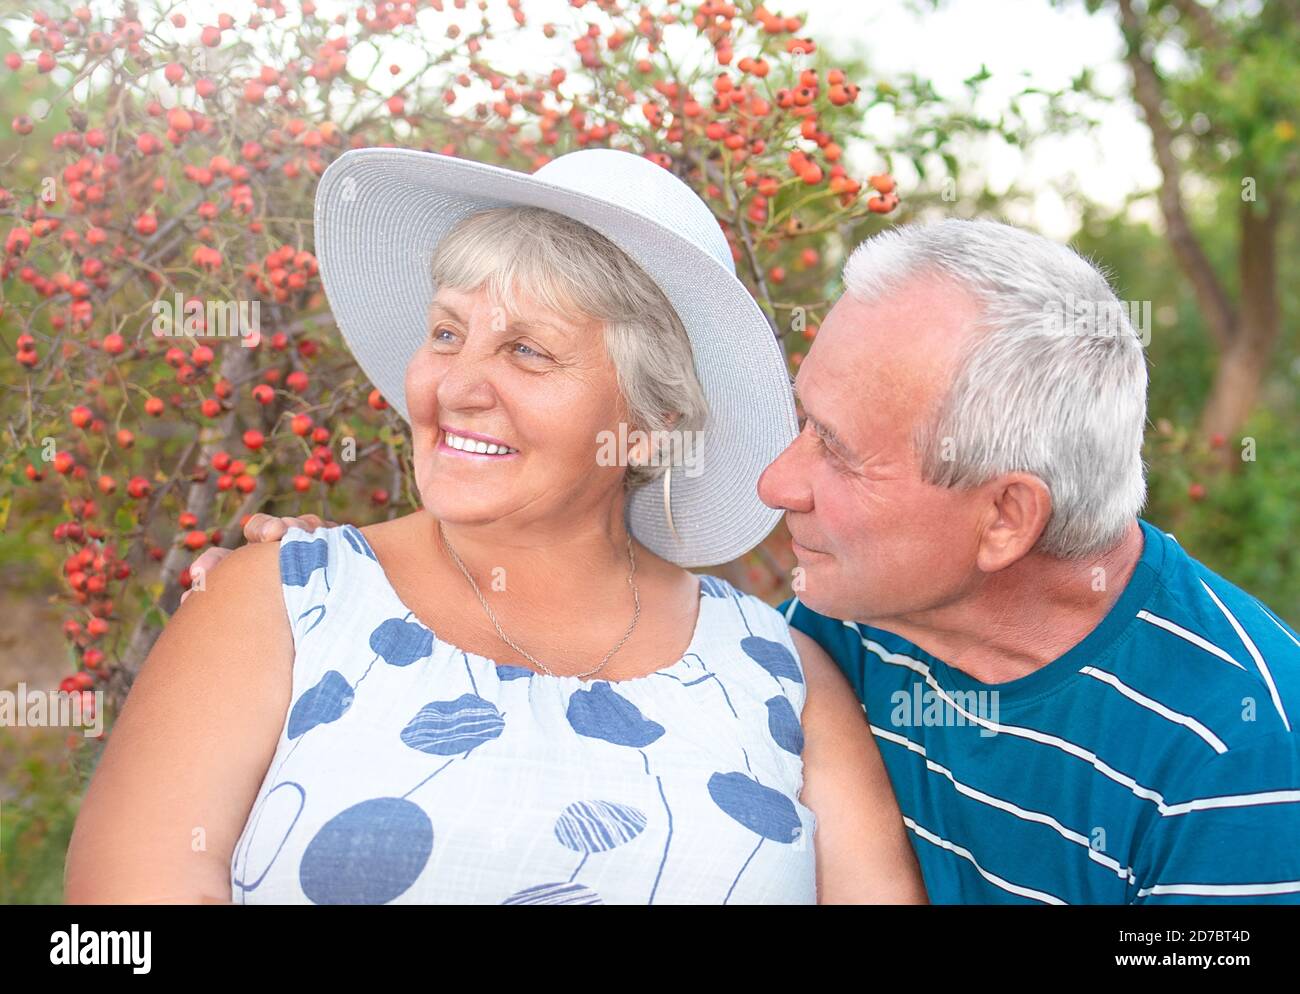 Autentico scatto all'aperto di coppie anziane che si divertono in giardino e benedette con amore. Durante il loro gioco l'uomo sta cercando di baciare il suo compagno e lei è Foto Stock